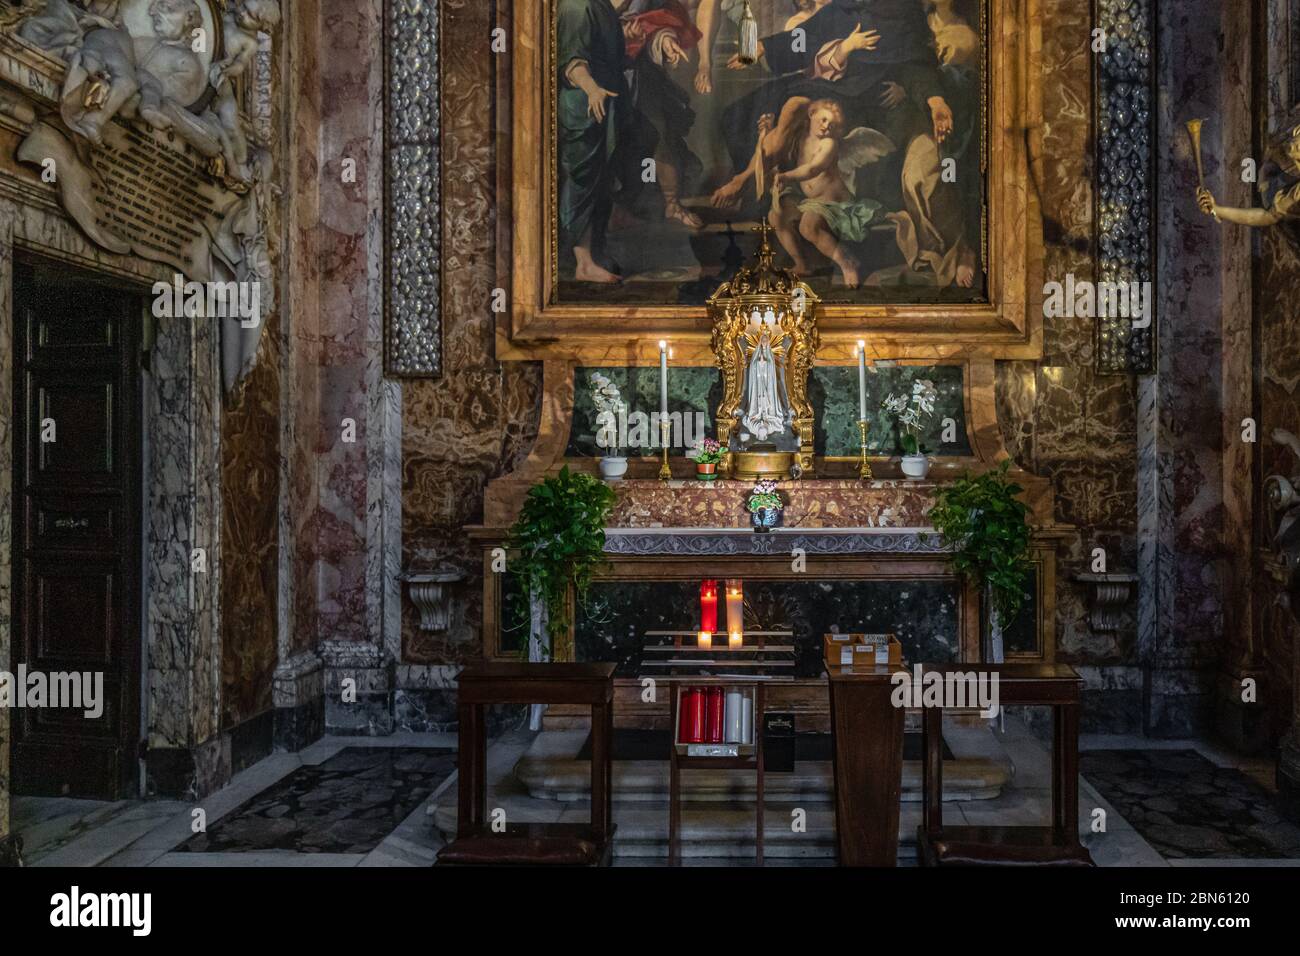 Roma, Italia - 10 03 2018: Interno della chiesa di San Marcello al corso a Roma Foto Stock